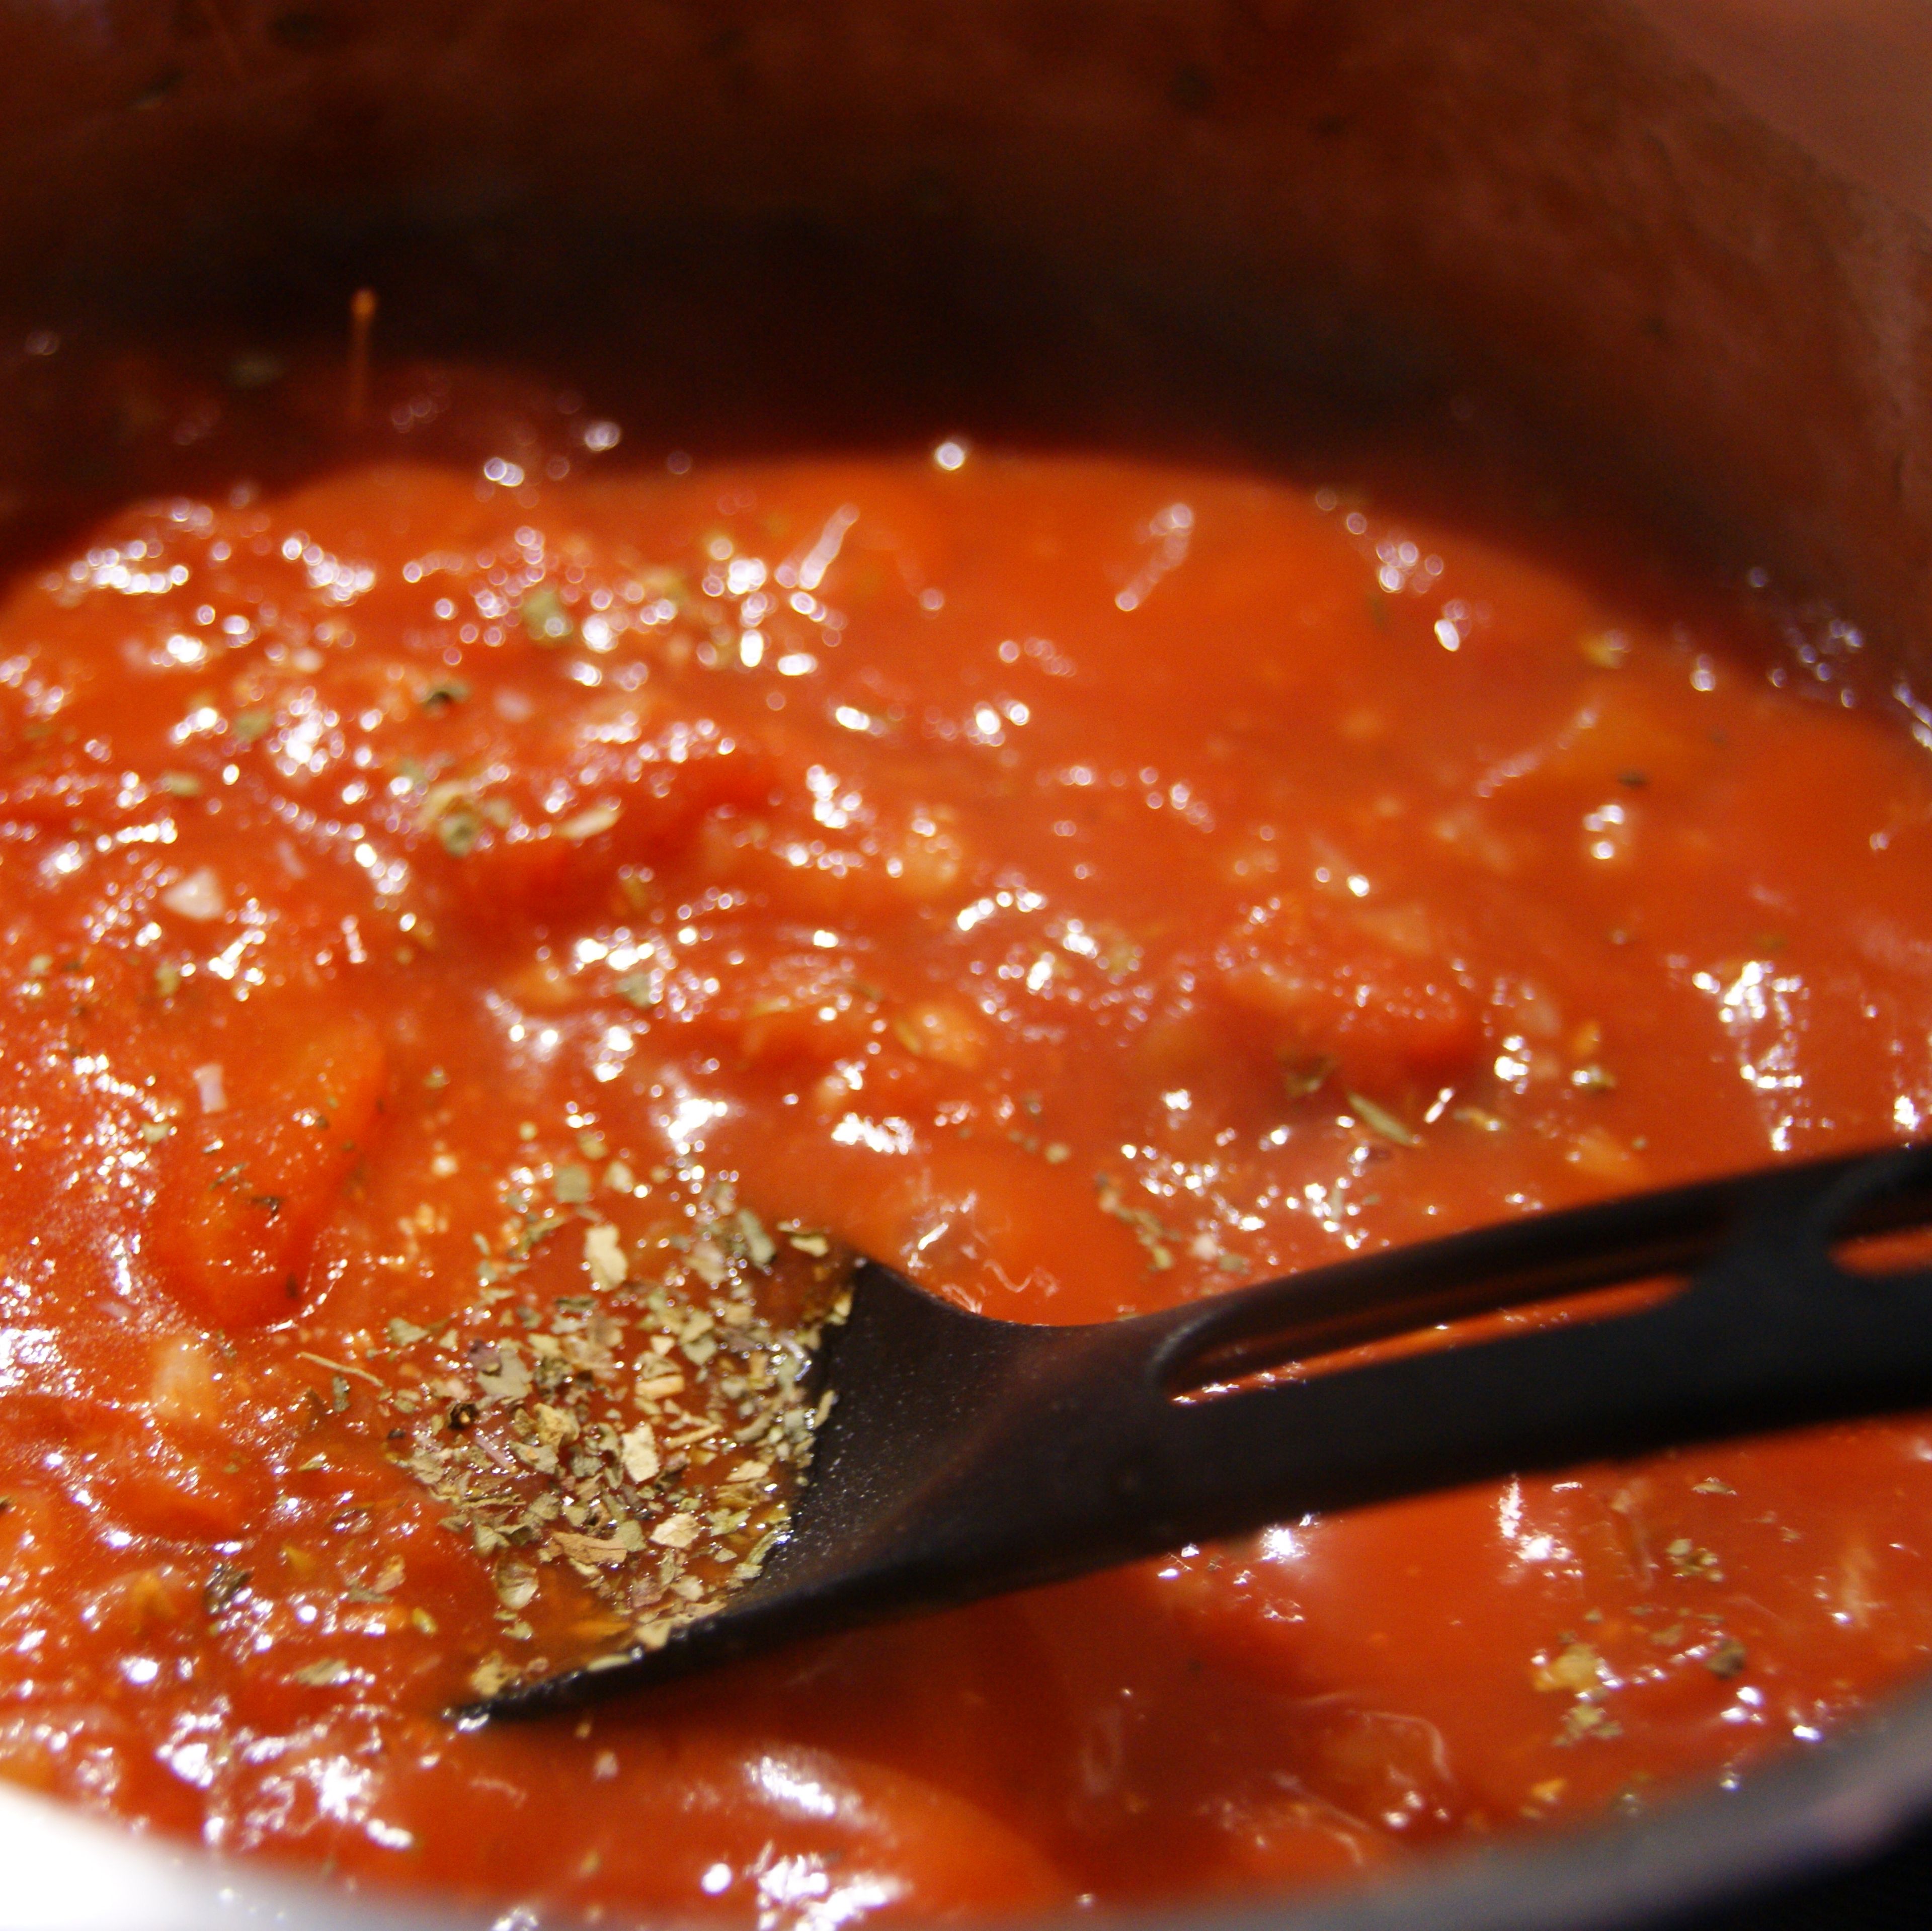 Für die Sauce, 65g gehackte Zwiebeln und 2 Knoblauchzehen andünsten. Die Tomaten sowie die Gewürze und Kräuter hinzufügen und 5-8 Minuten köcheln lassen. Danach das Ganze mit einem Stabmixer zerkleinern, 1 EL Sahne und das Wasser hinzufügen, je nach gewünschter Konsistenz.